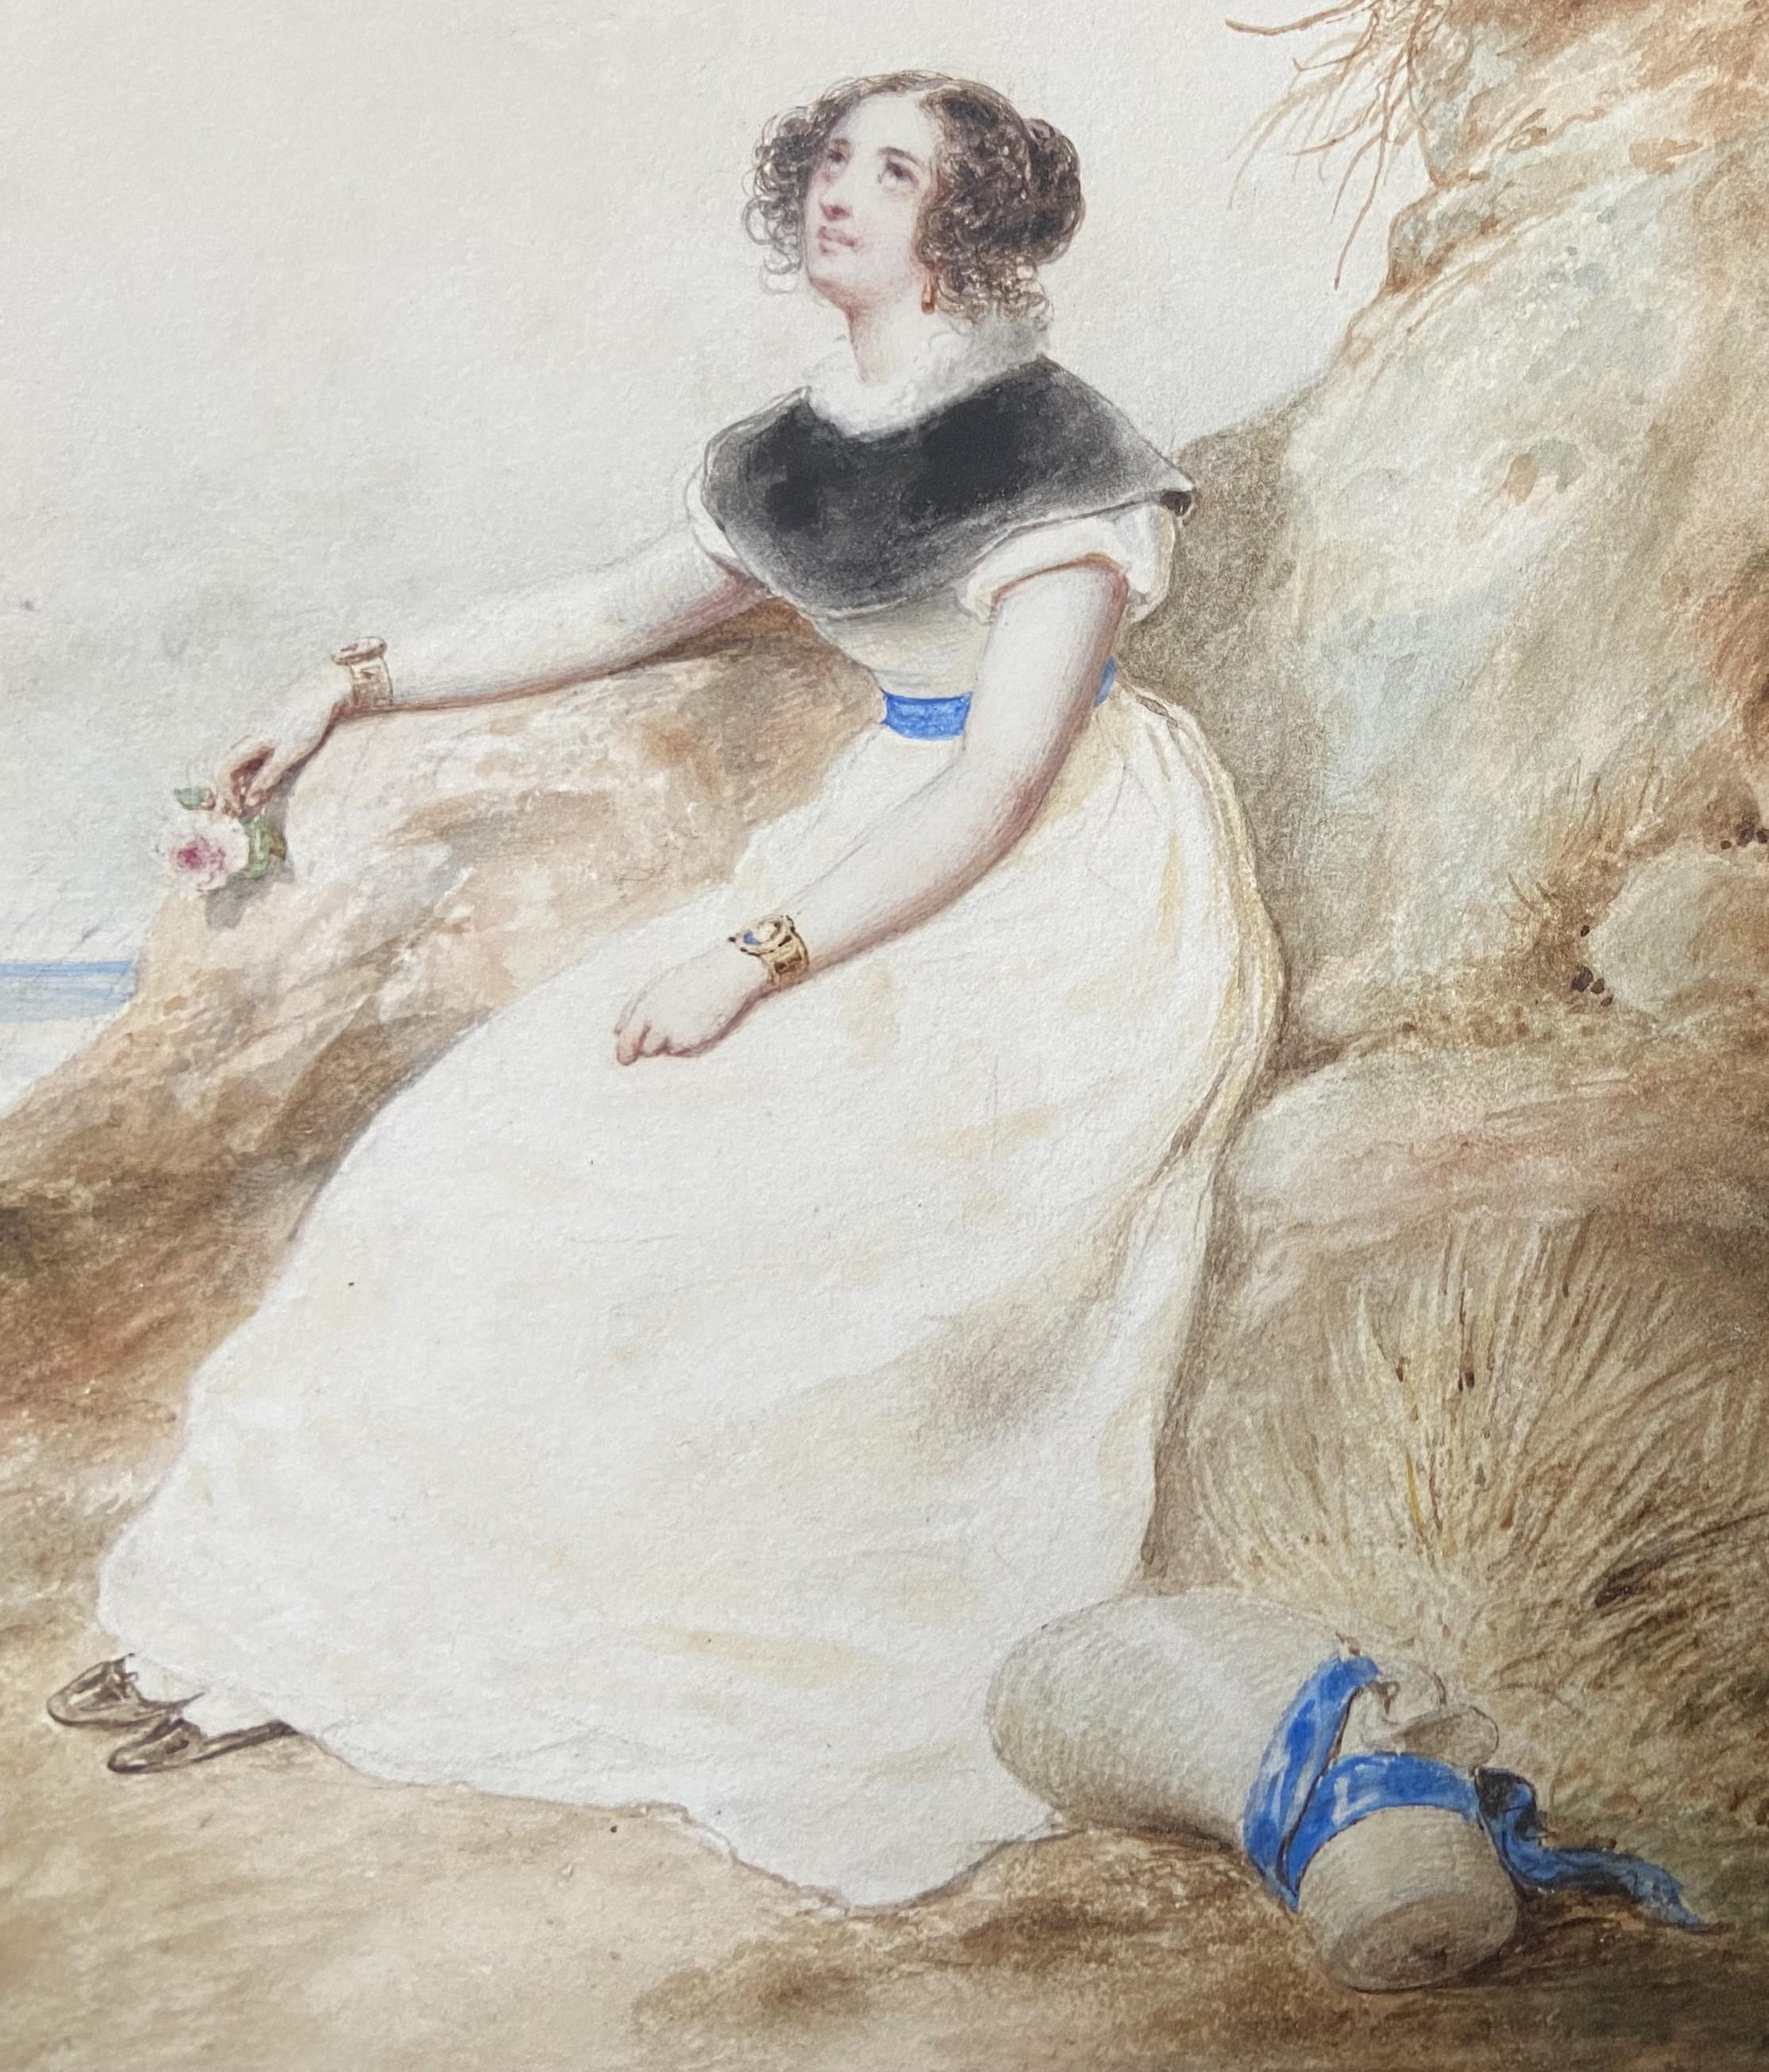 François Grenier de Saint Martin (1793-1867) 
Jeune femme sur la plage, 1829, 
signé et daté en bas à gauche
aquarelle sur papier
17 x 19.5 cm
Encadré 30 x 32.3 cm

À bien des égards, cette aquarelle délicate est l'archétype de l'art romantique : la